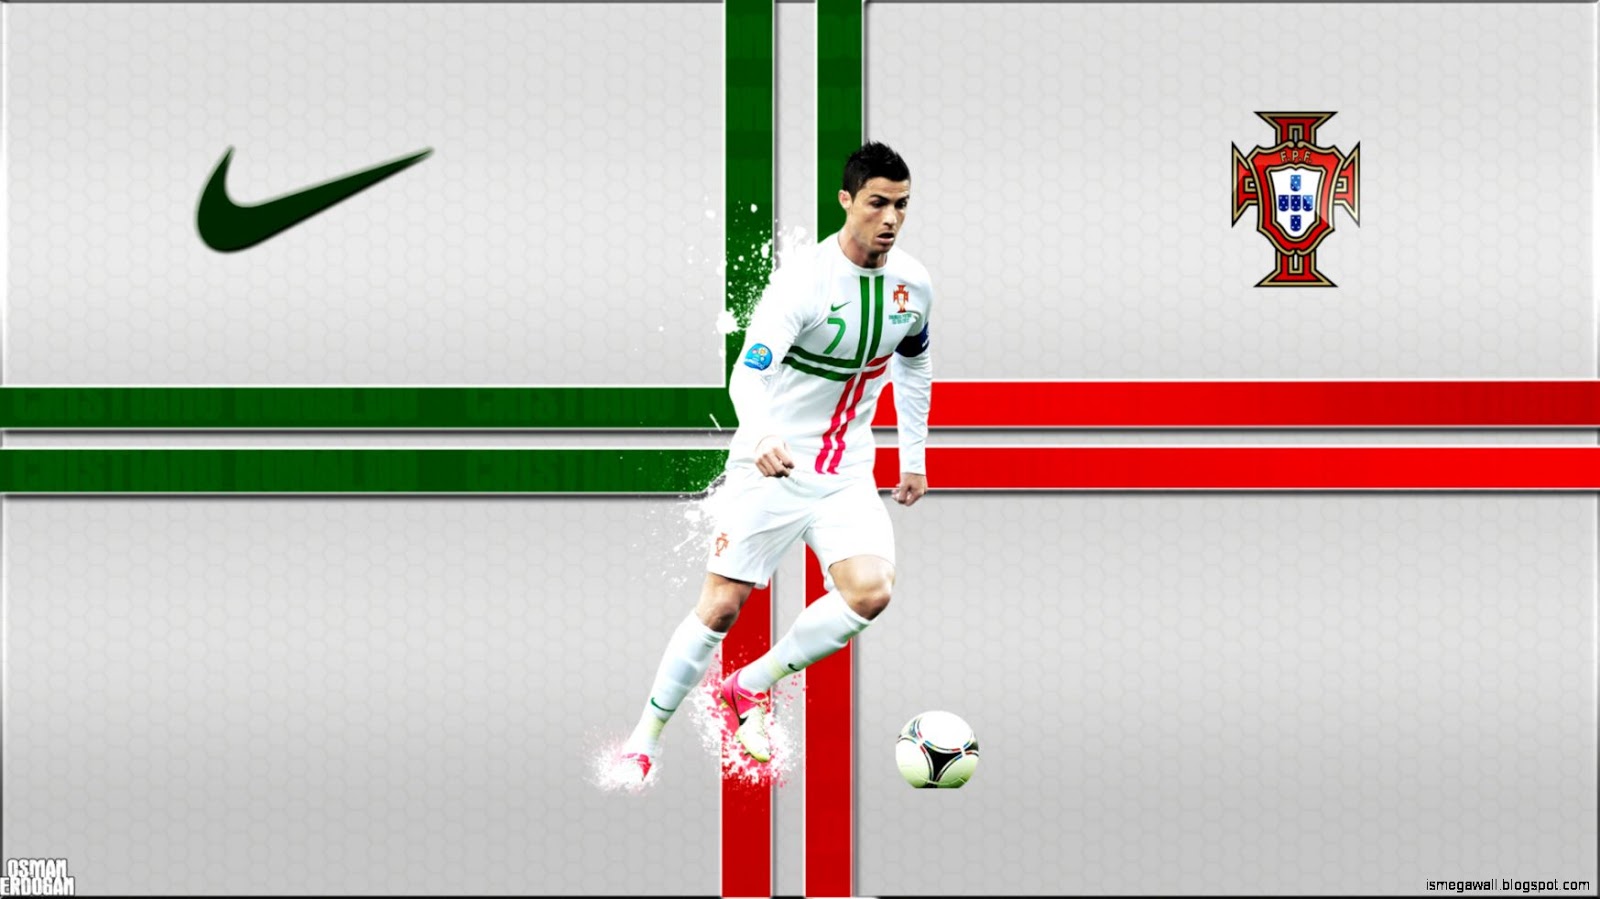 Cristiano Ronaldo Portugal - Cristiano Ronaldo Portugal Wallpaper Pc , HD Wallpaper & Backgrounds